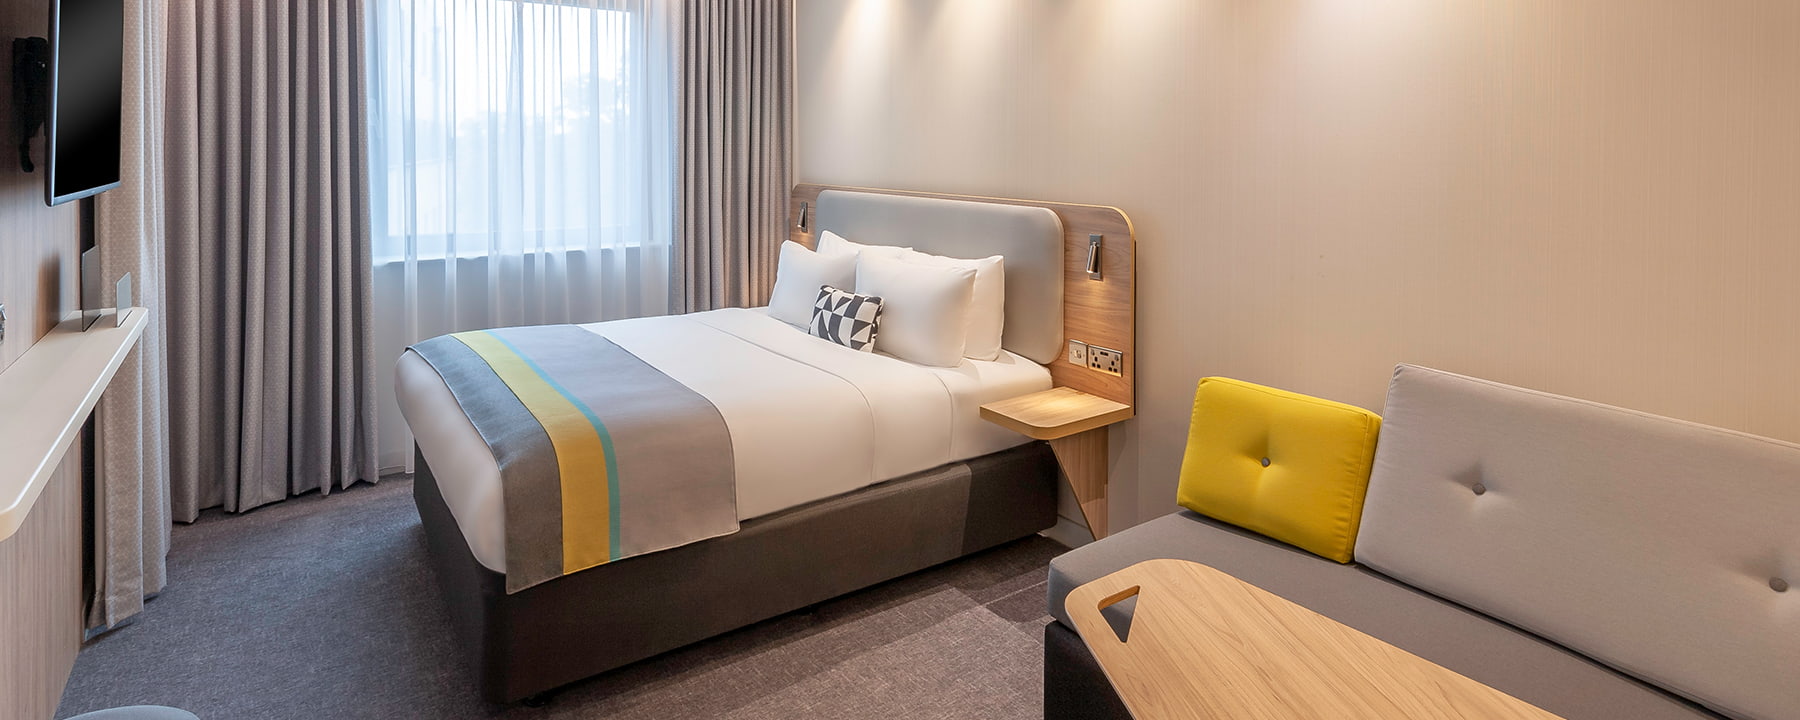 Dublin Airport hotel double bedroom